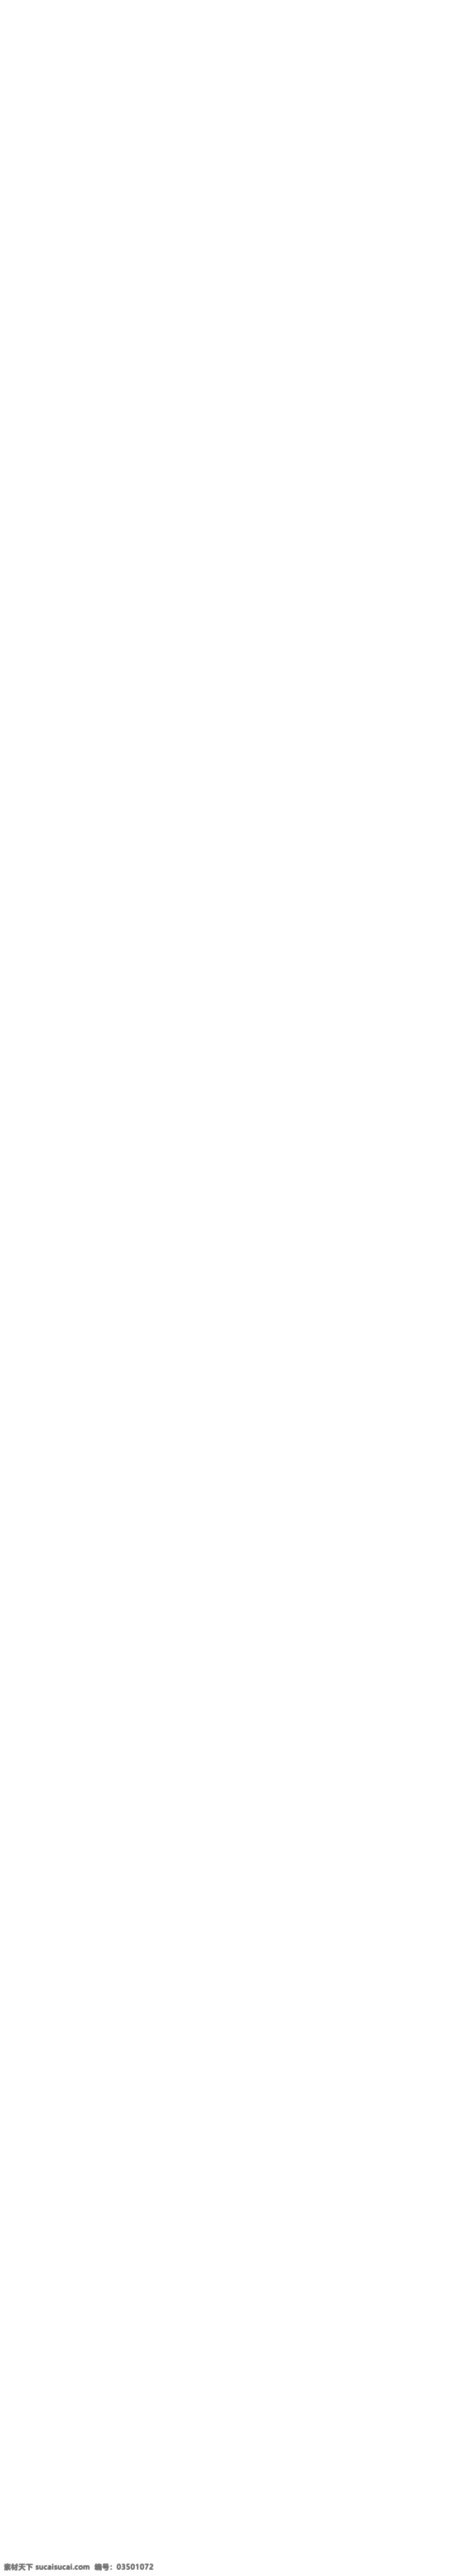 天猫 夏季 泳装 服装 无线 手机 端 首页 模板 蓝色模板 泳衣 装修 店铺首页 手机端 无线端 手机端店铺 手机端装修 淘宝手机端 网店模板 装修模板 淘宝 psd格式